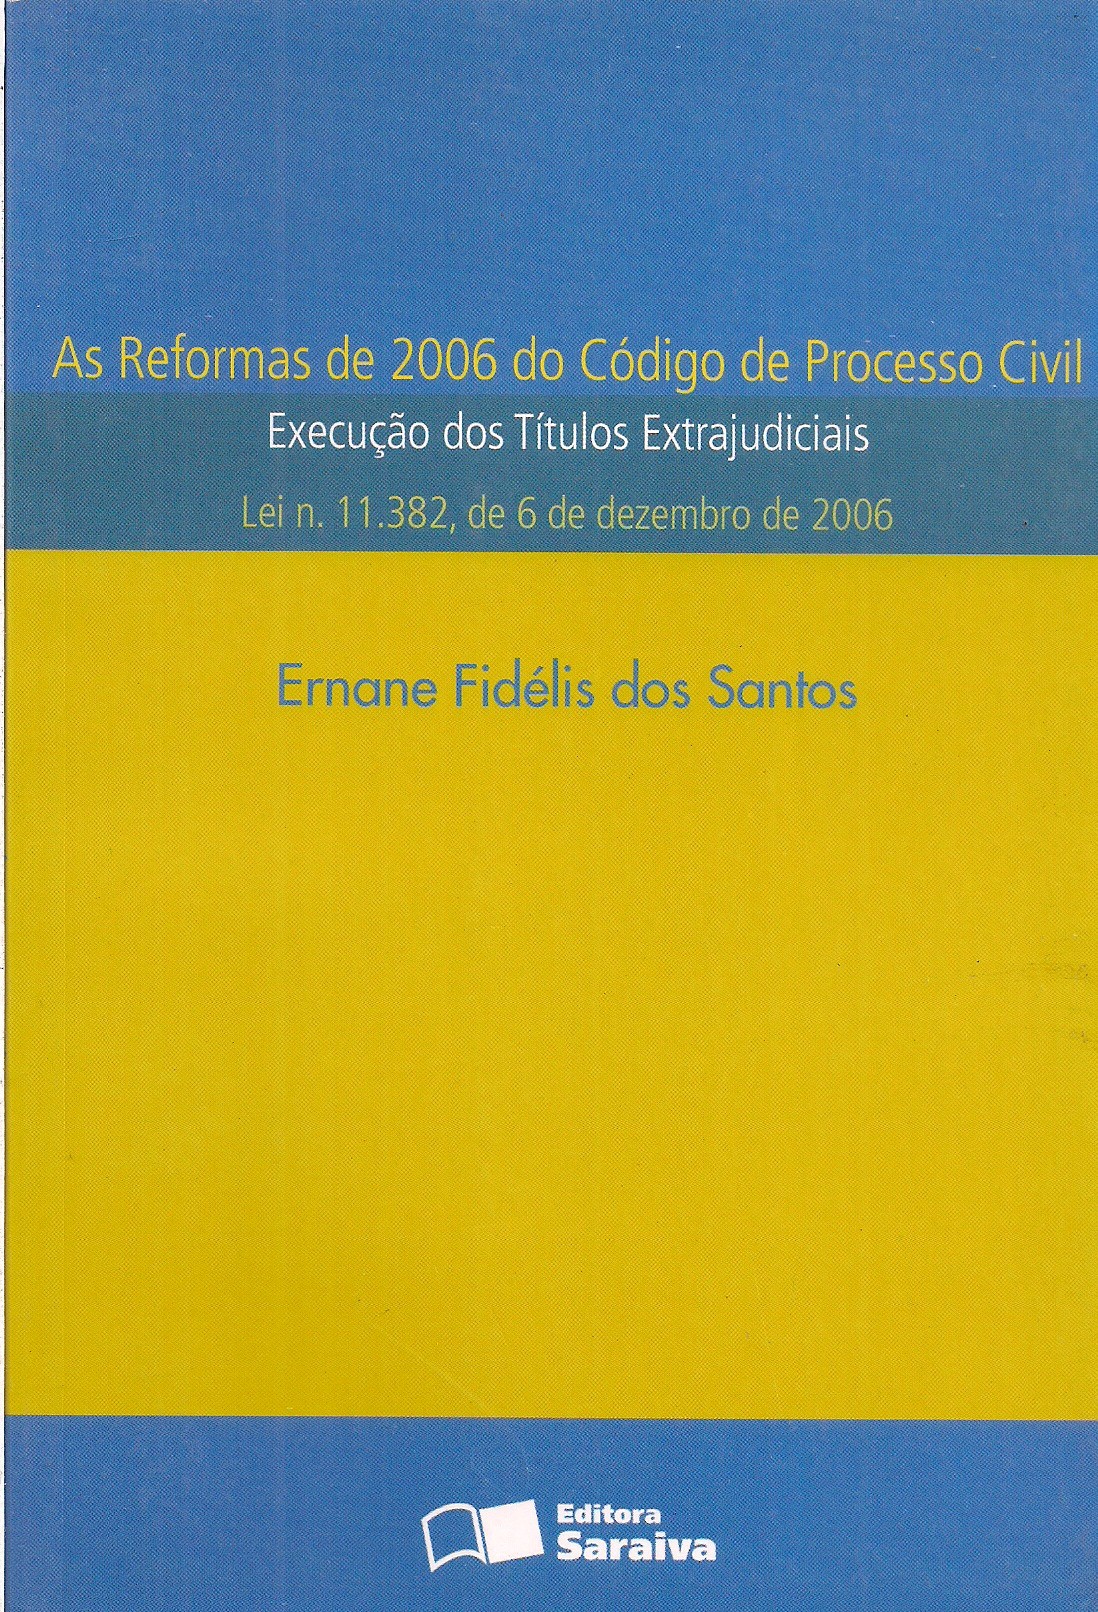 Foto 1 - As reformas de 2006 do código de Processo Civil